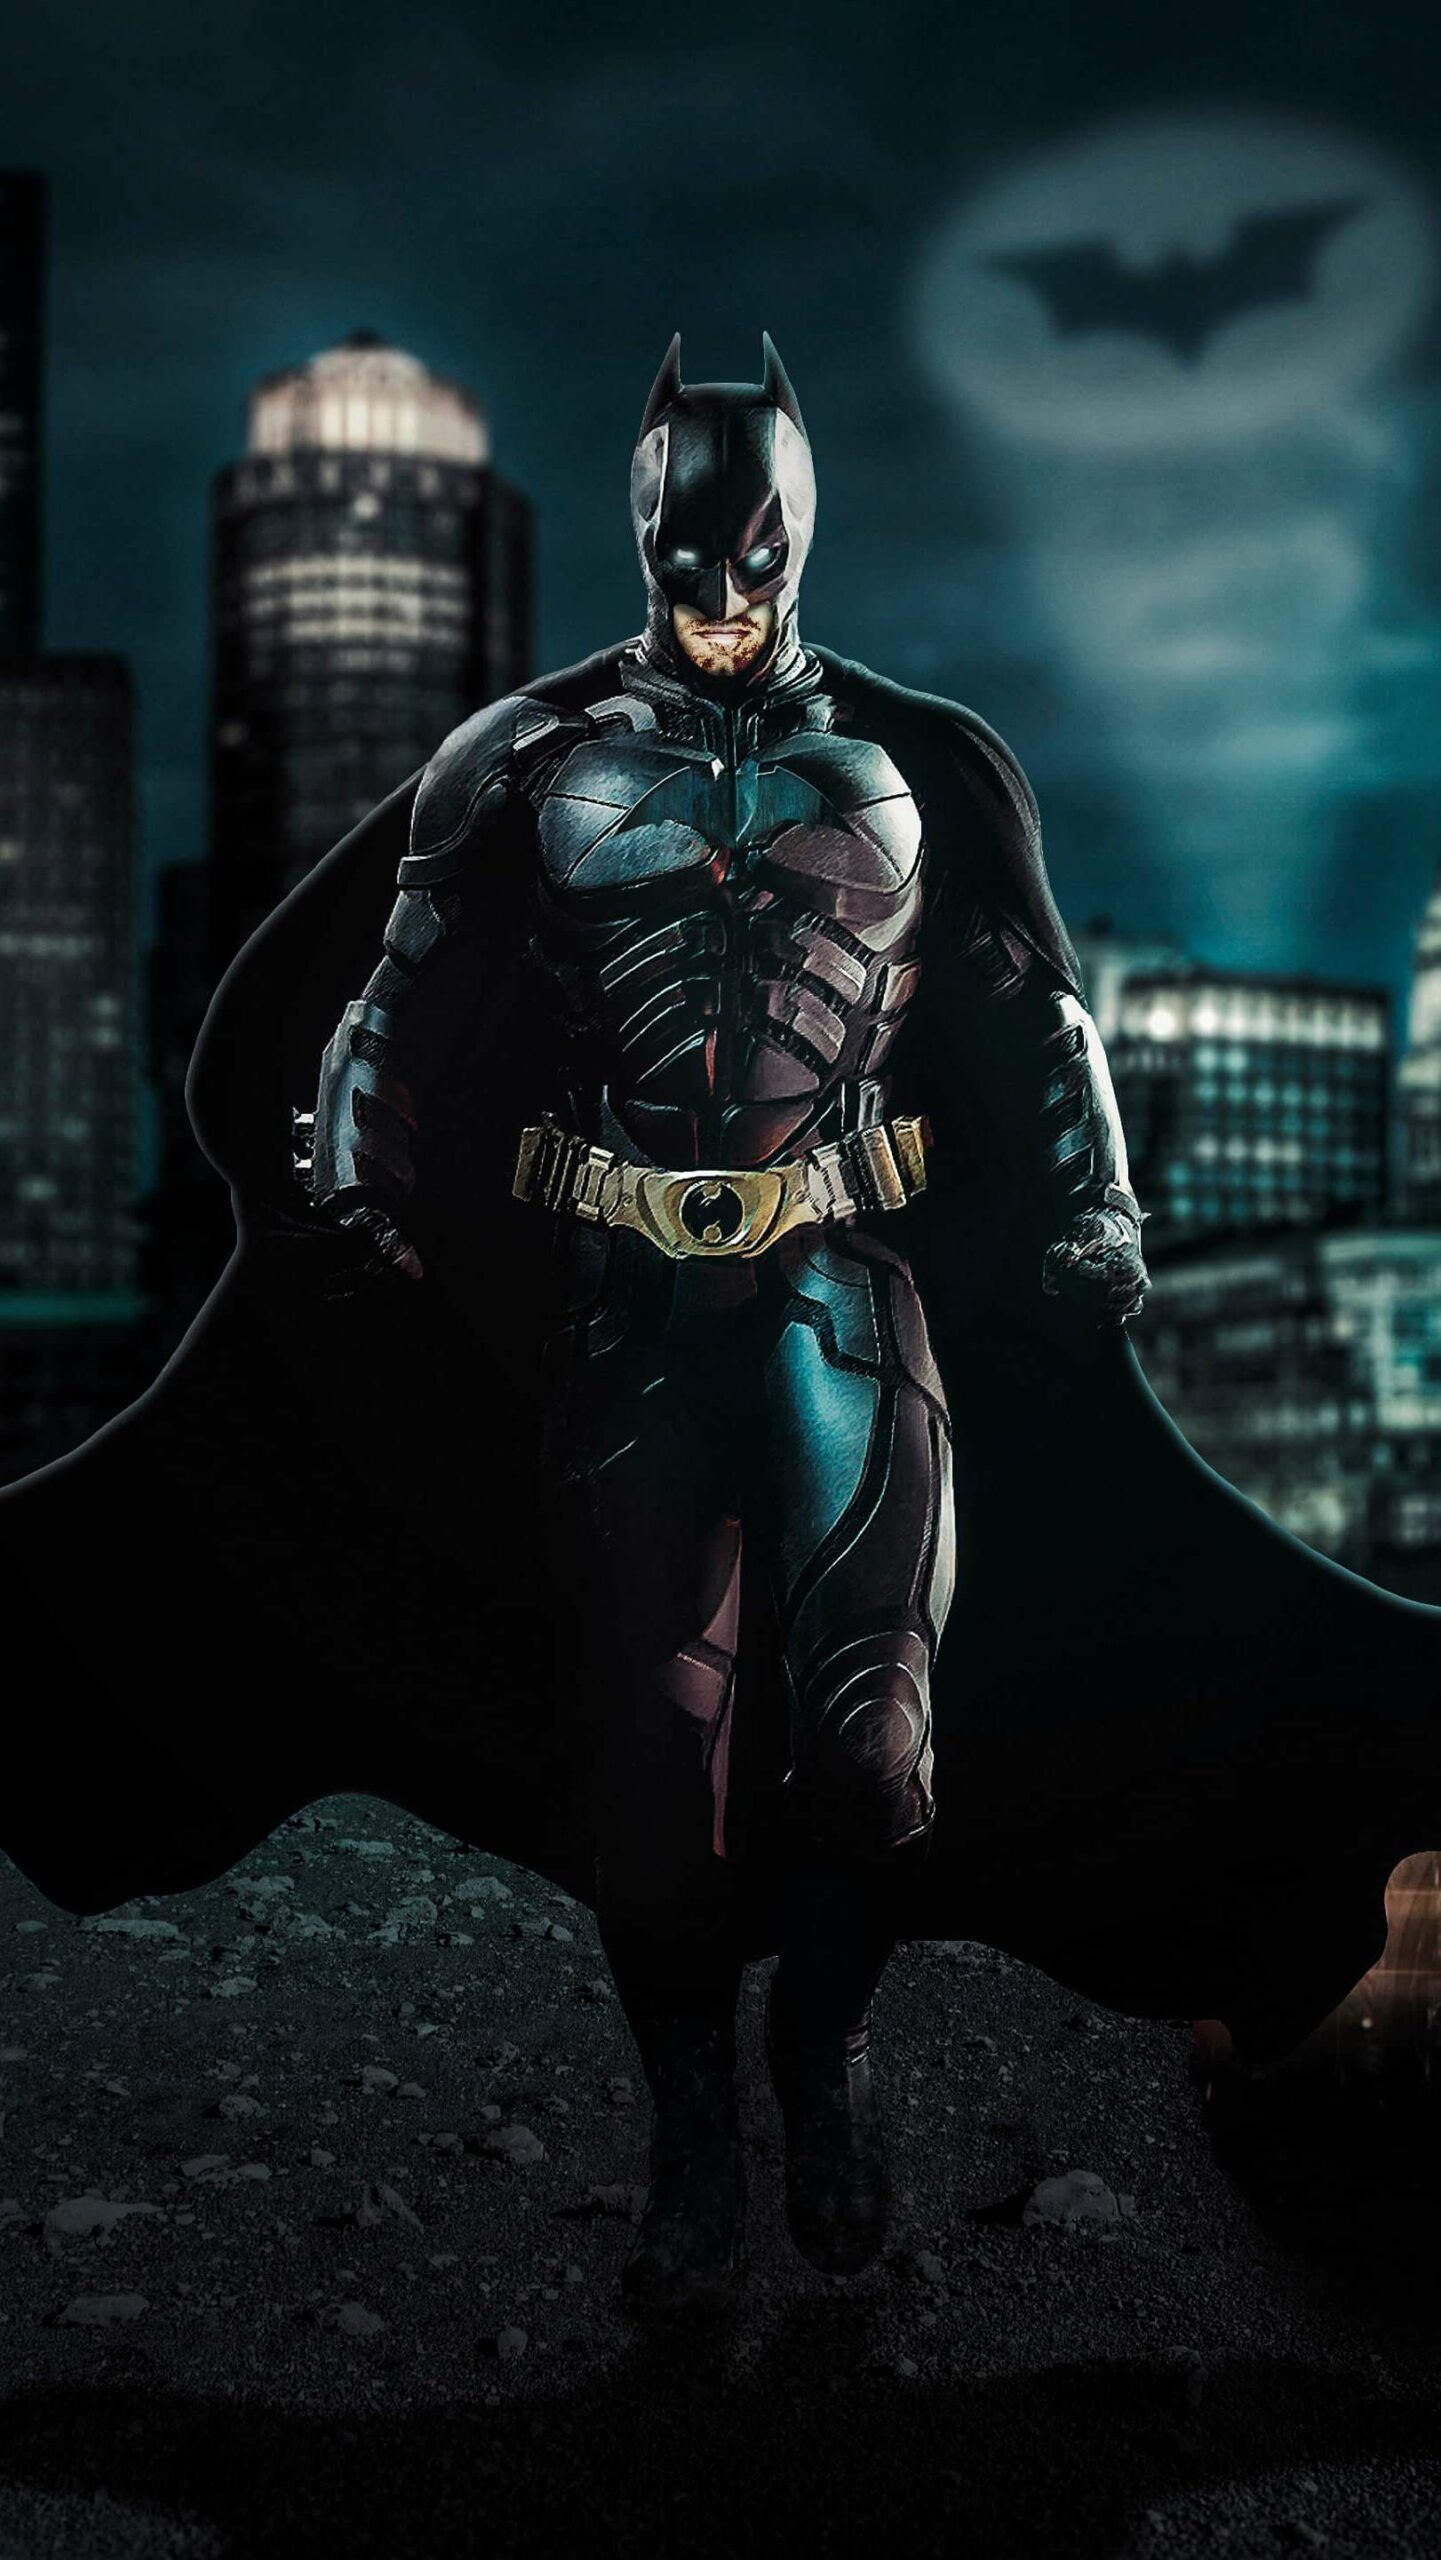 Batman Wallpaper Hd For Android - KibrisPDR